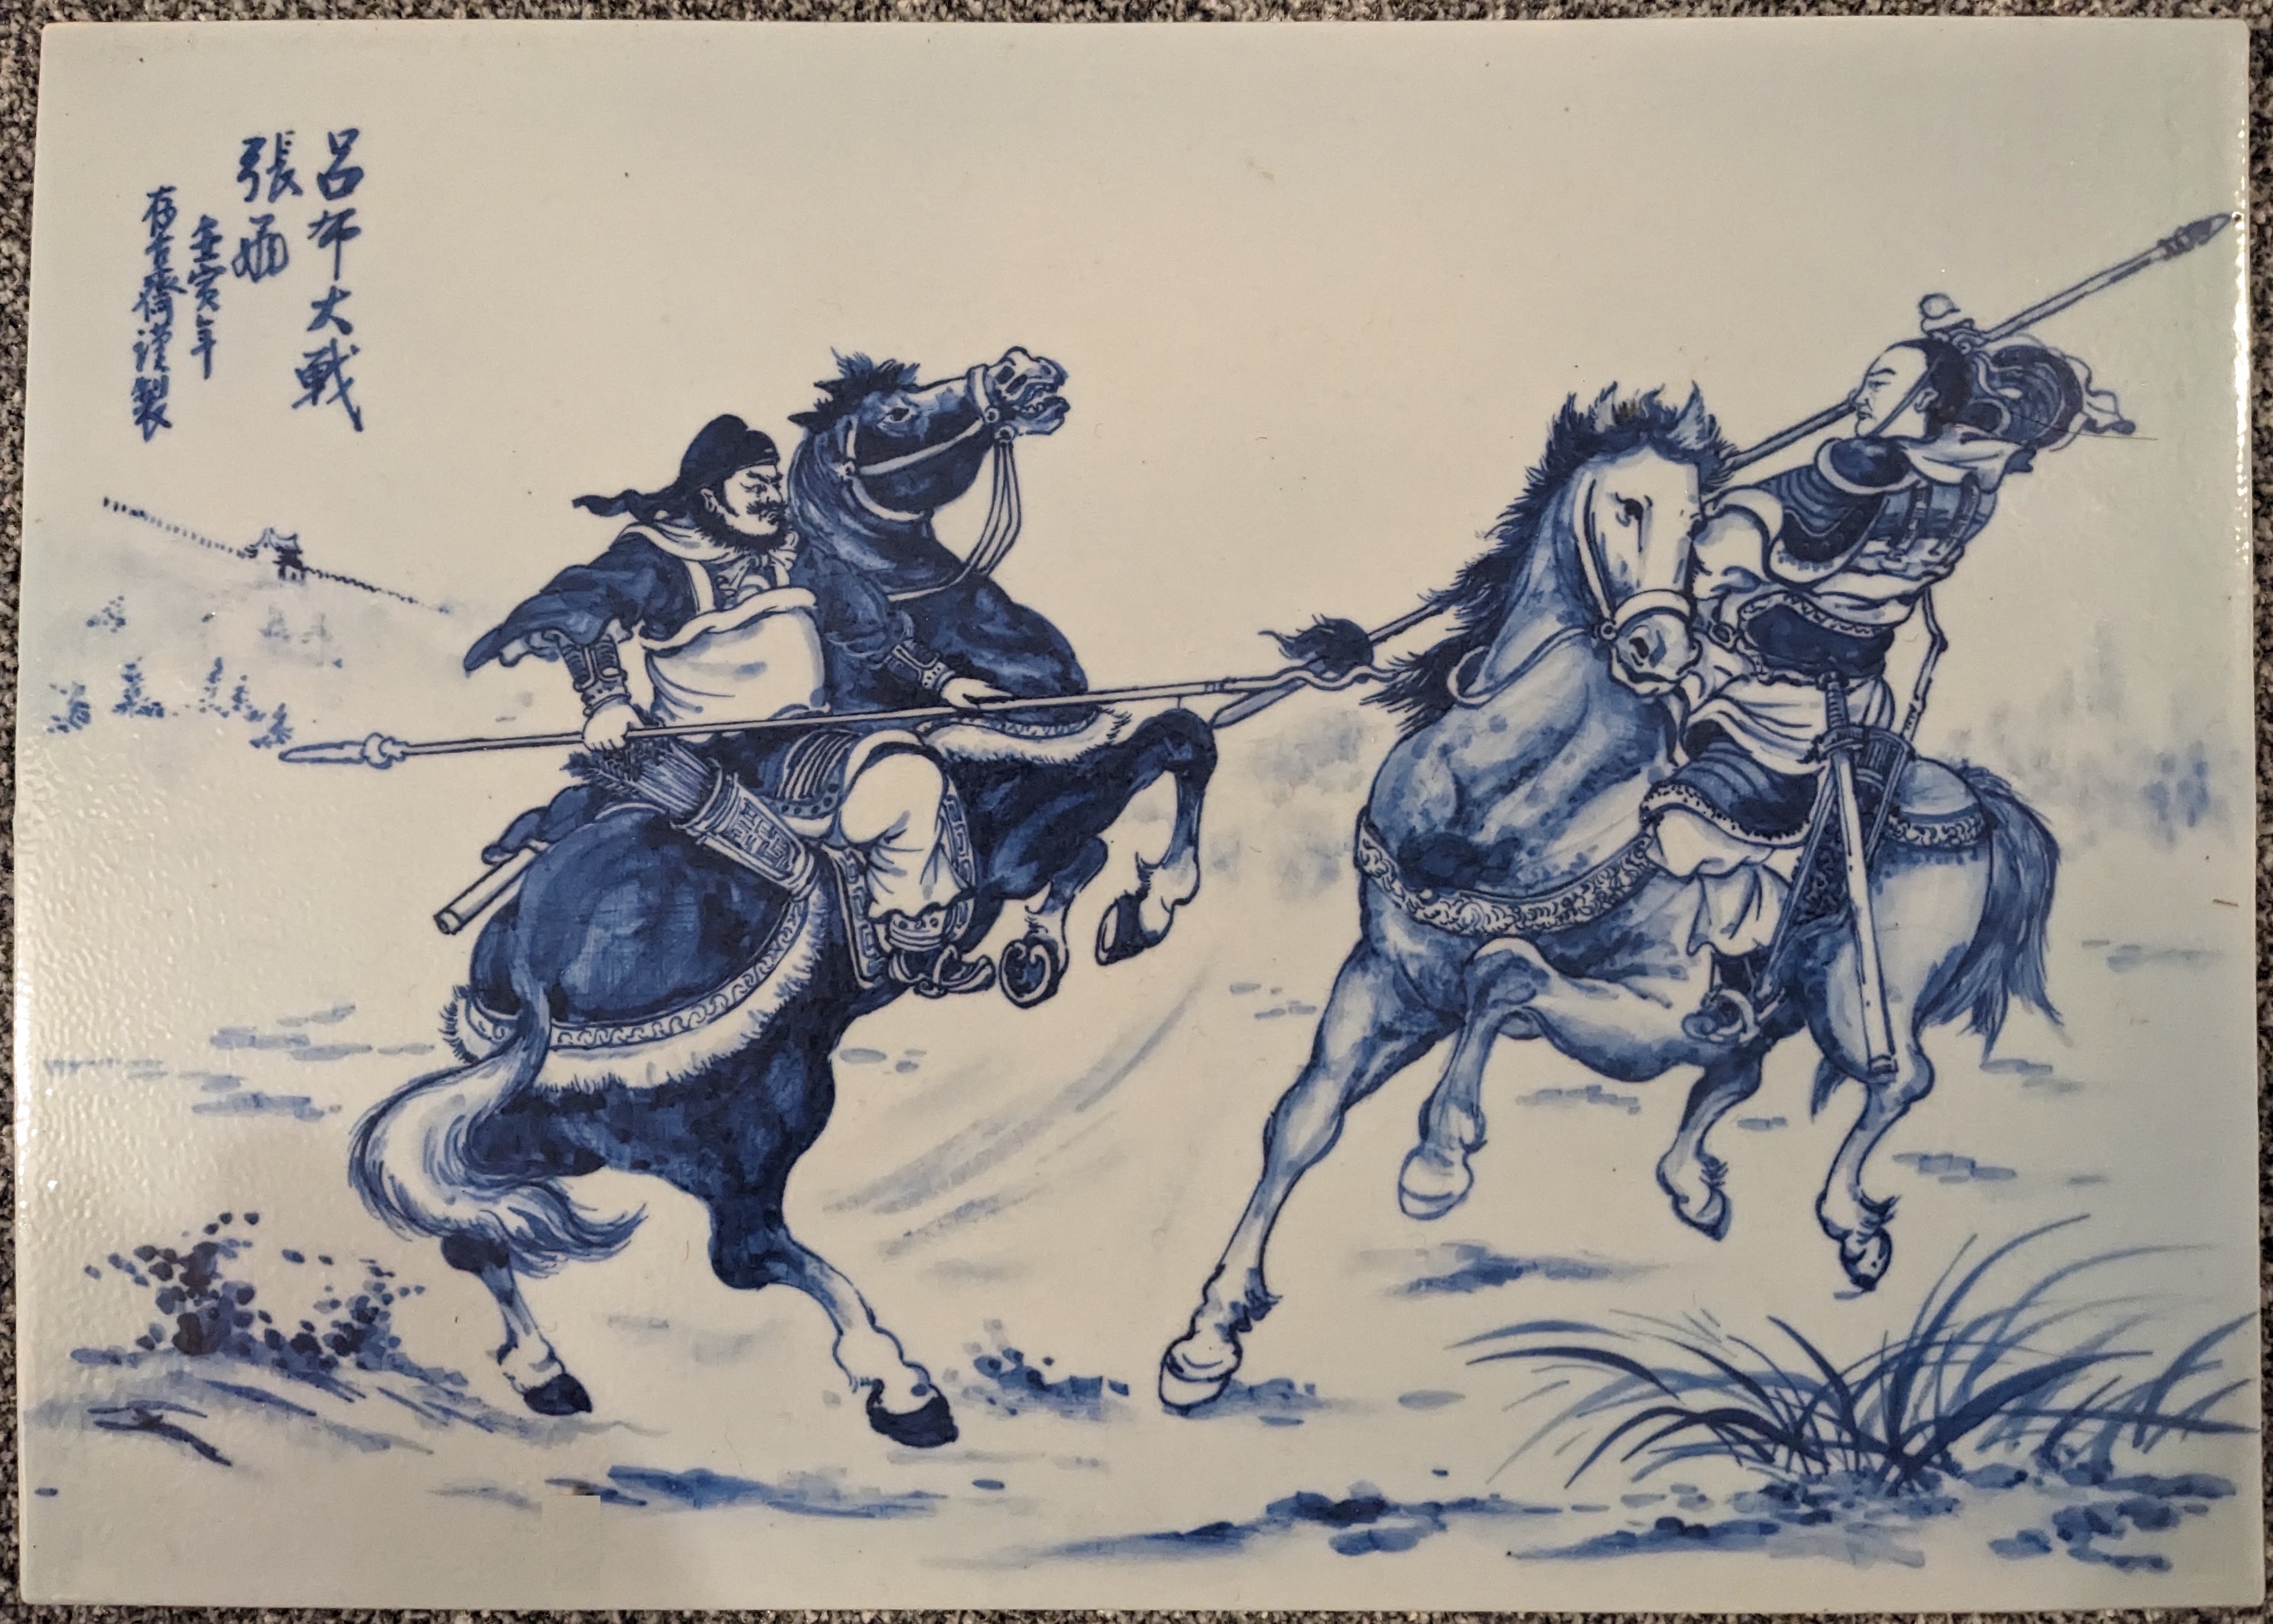 Lu Bu battles Zhang Fei